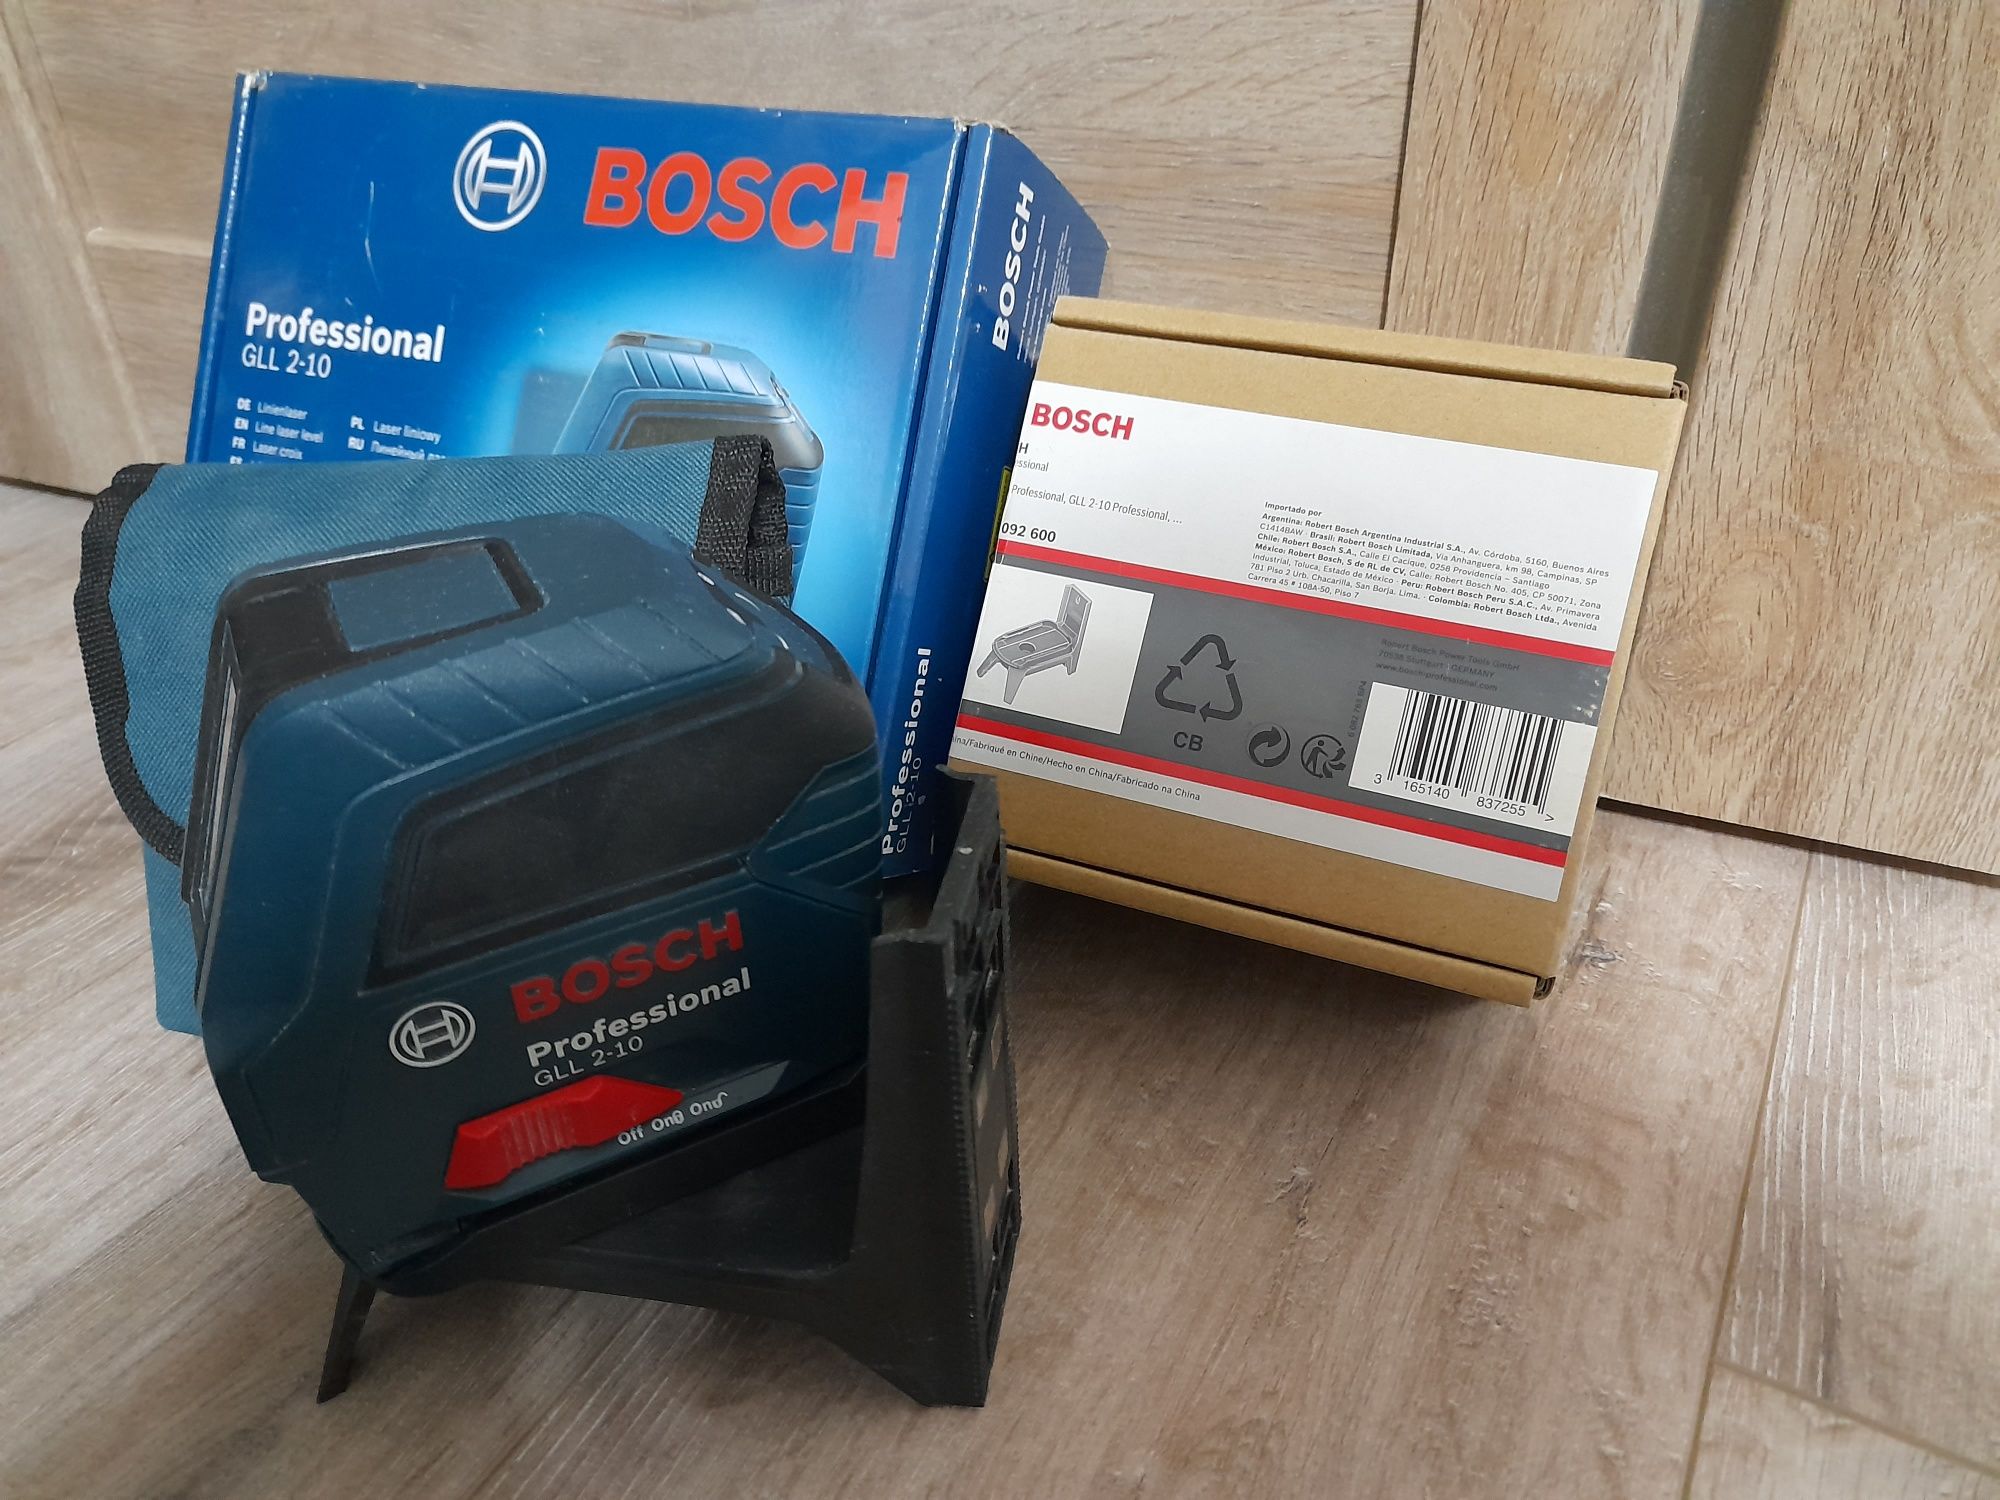 Лазерный нивелир Bosch Professional gll 2-10 с креплением